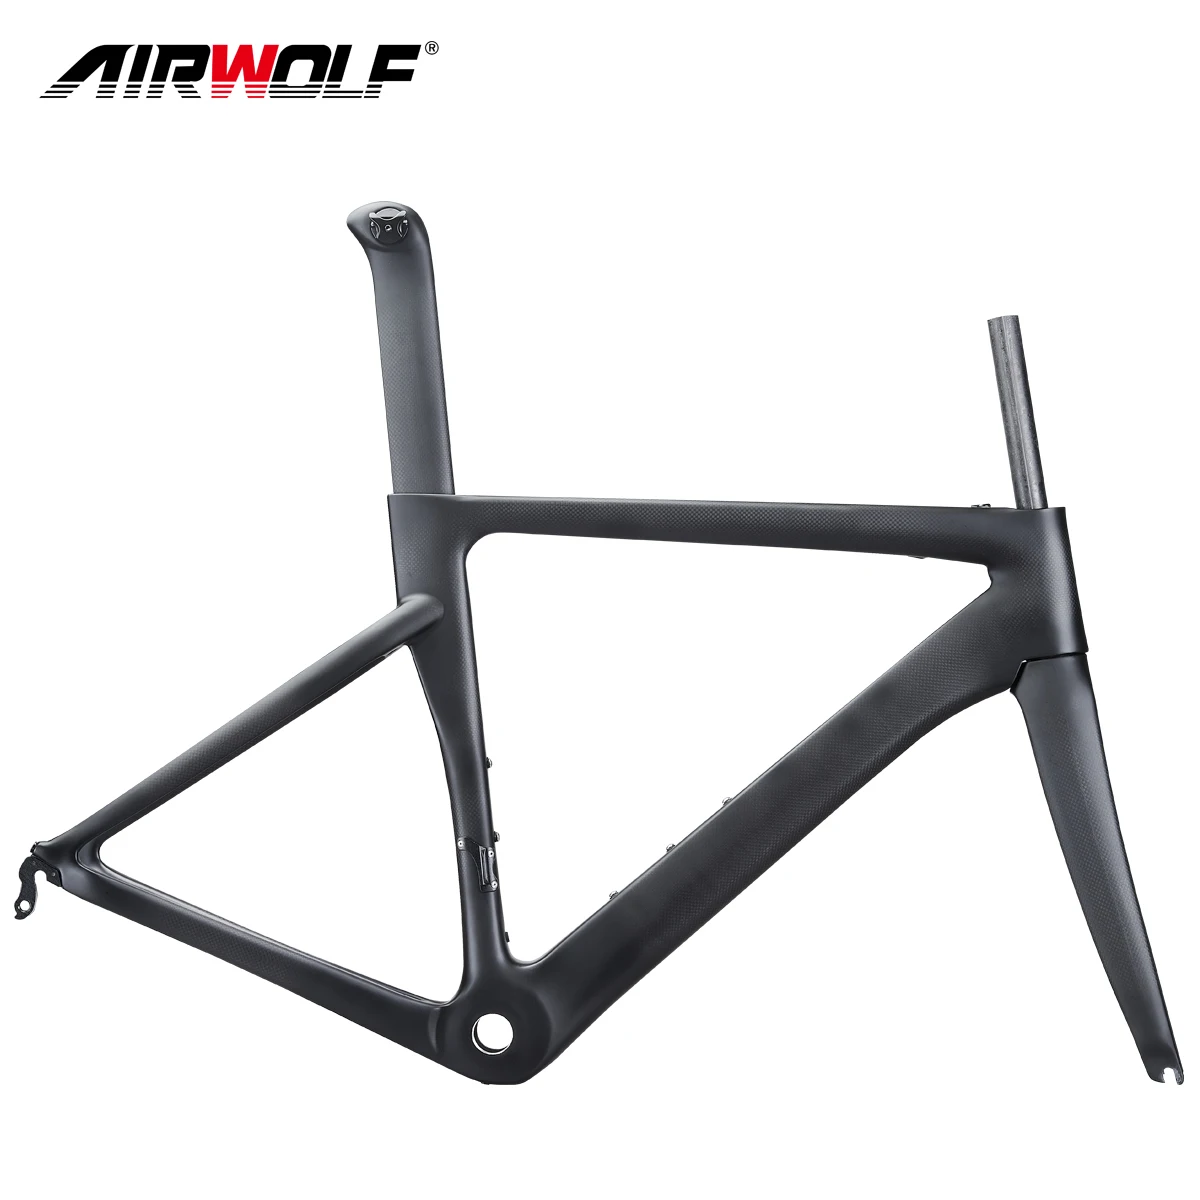 size 48 road bike frame